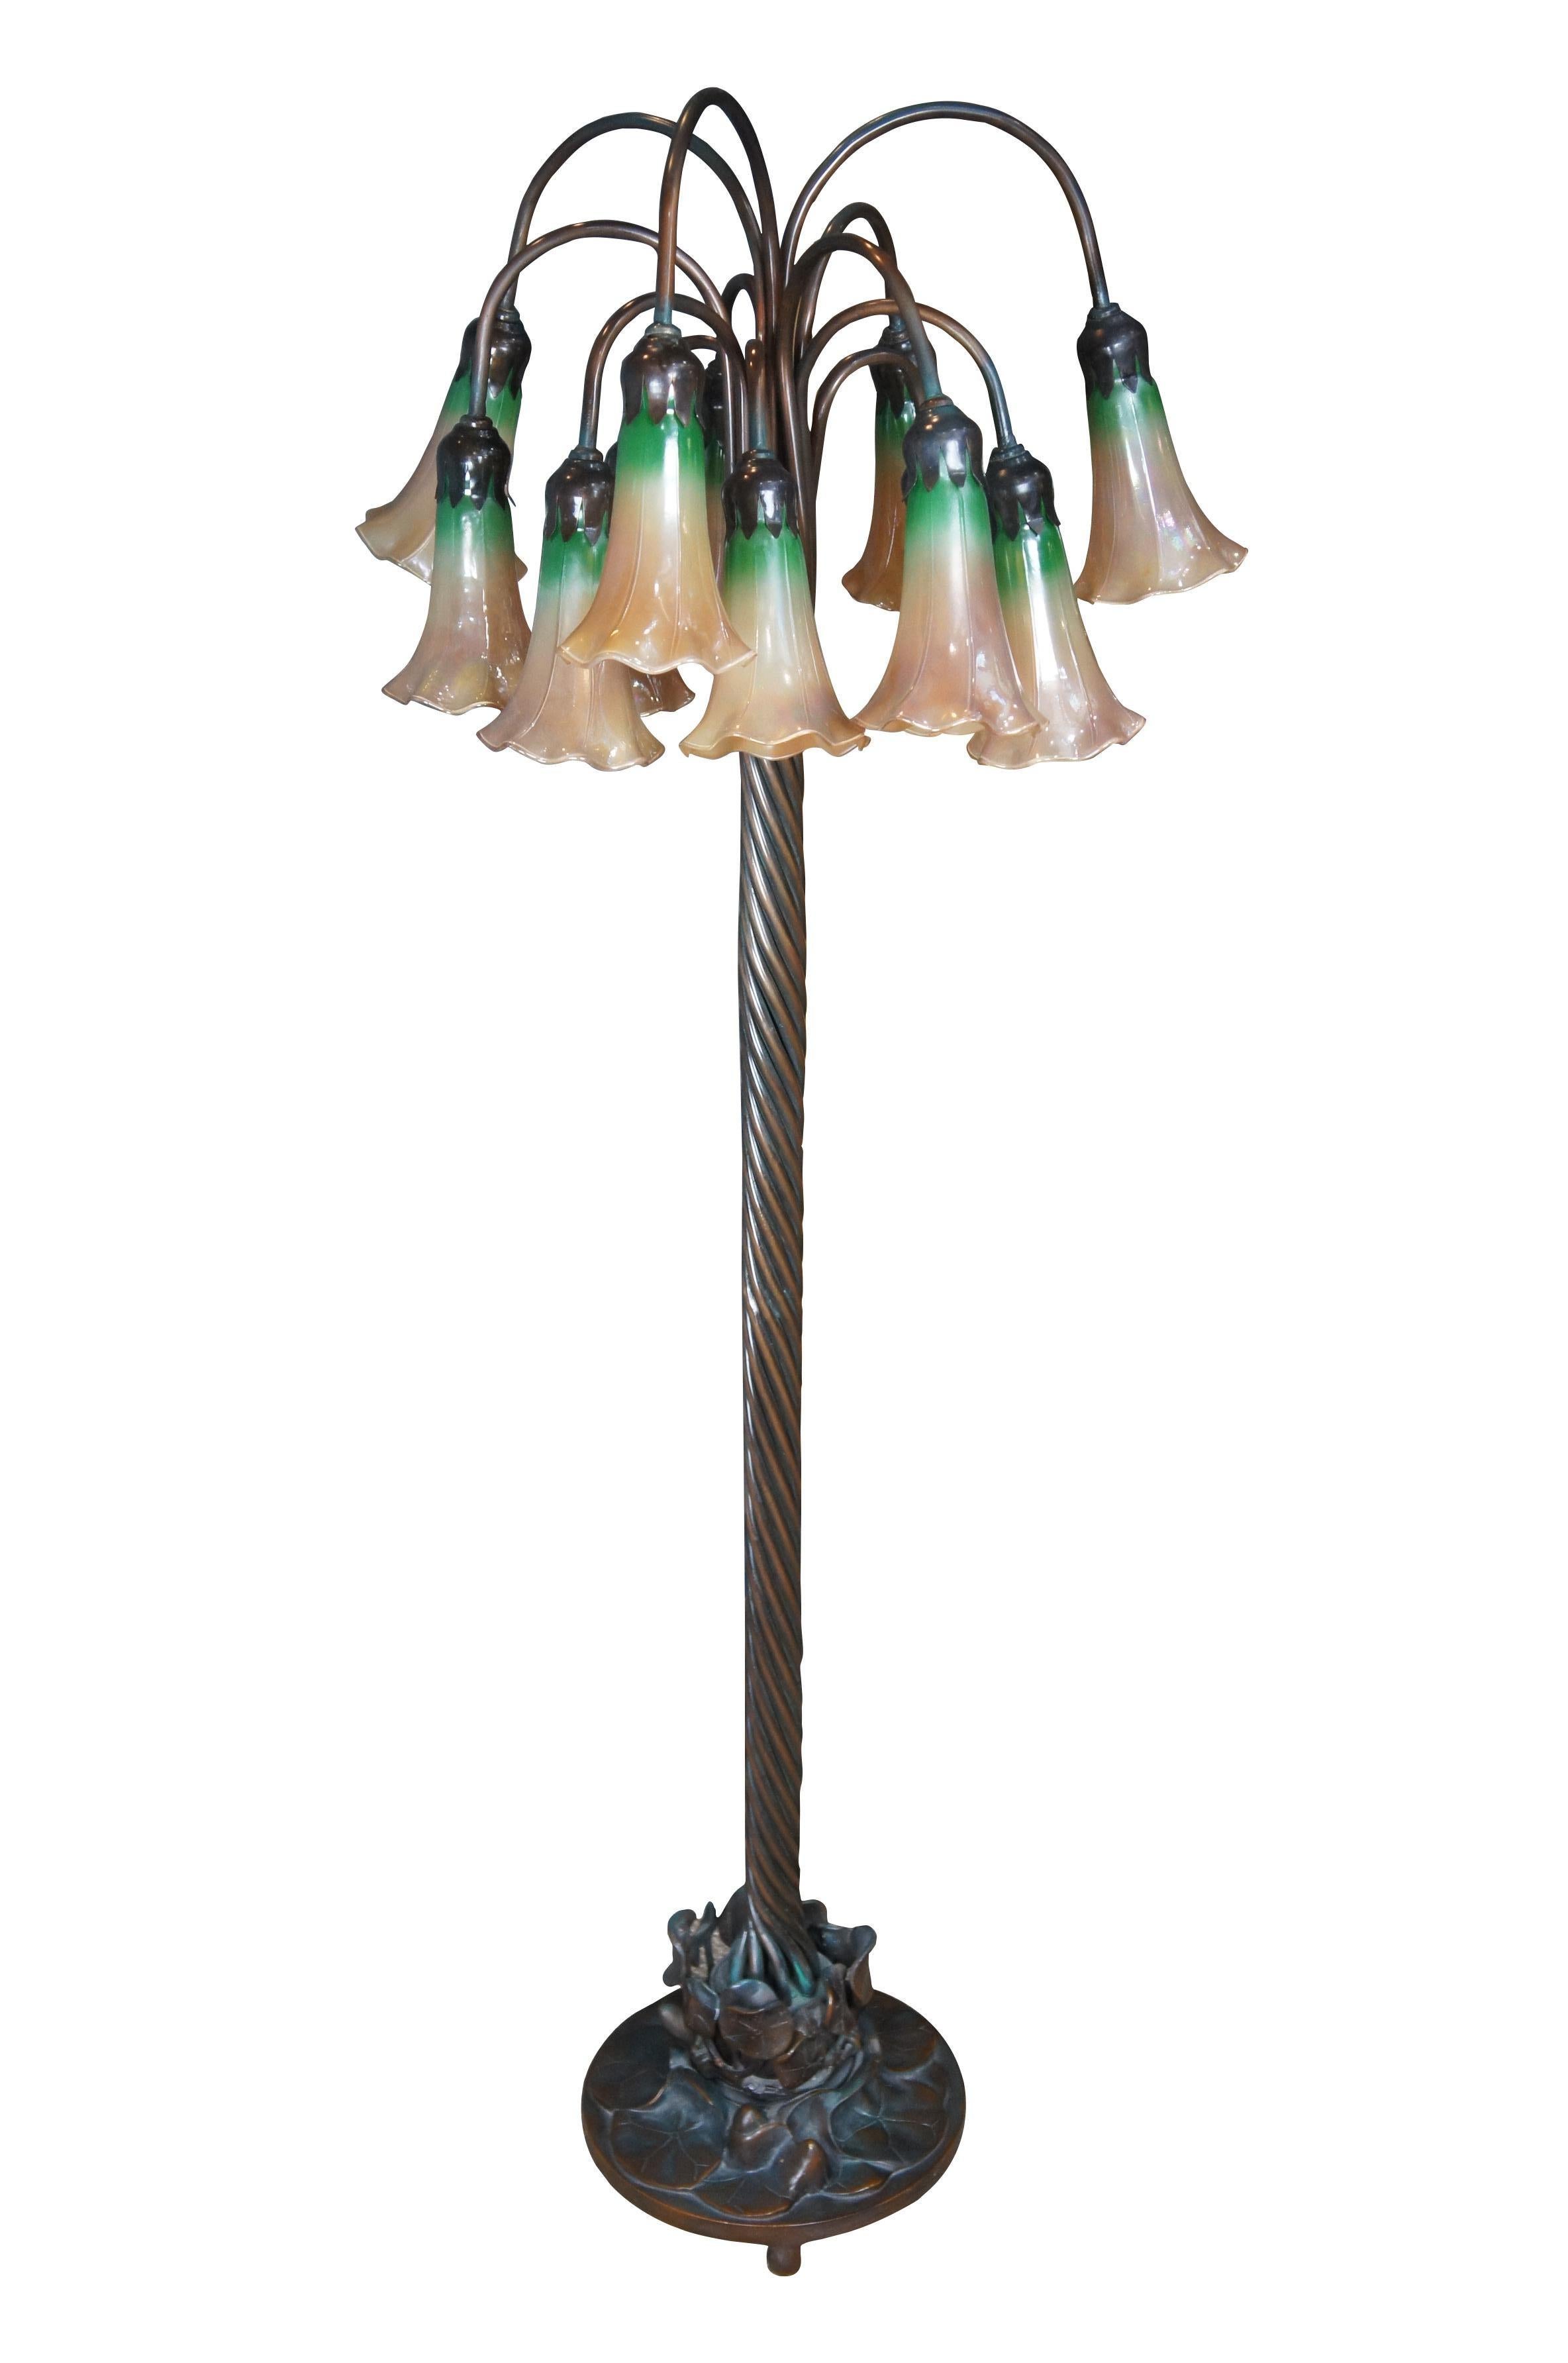 Lampadaire vintage de style Tiffany en bronze lourd de style Art of Vintage avec colonne torsadée et base en forme de nénuphar supportant douze abat-jour en verre tulipe fleuri.  Marqué kembia astm 88-k.  La lampe comprend deux abat-jour